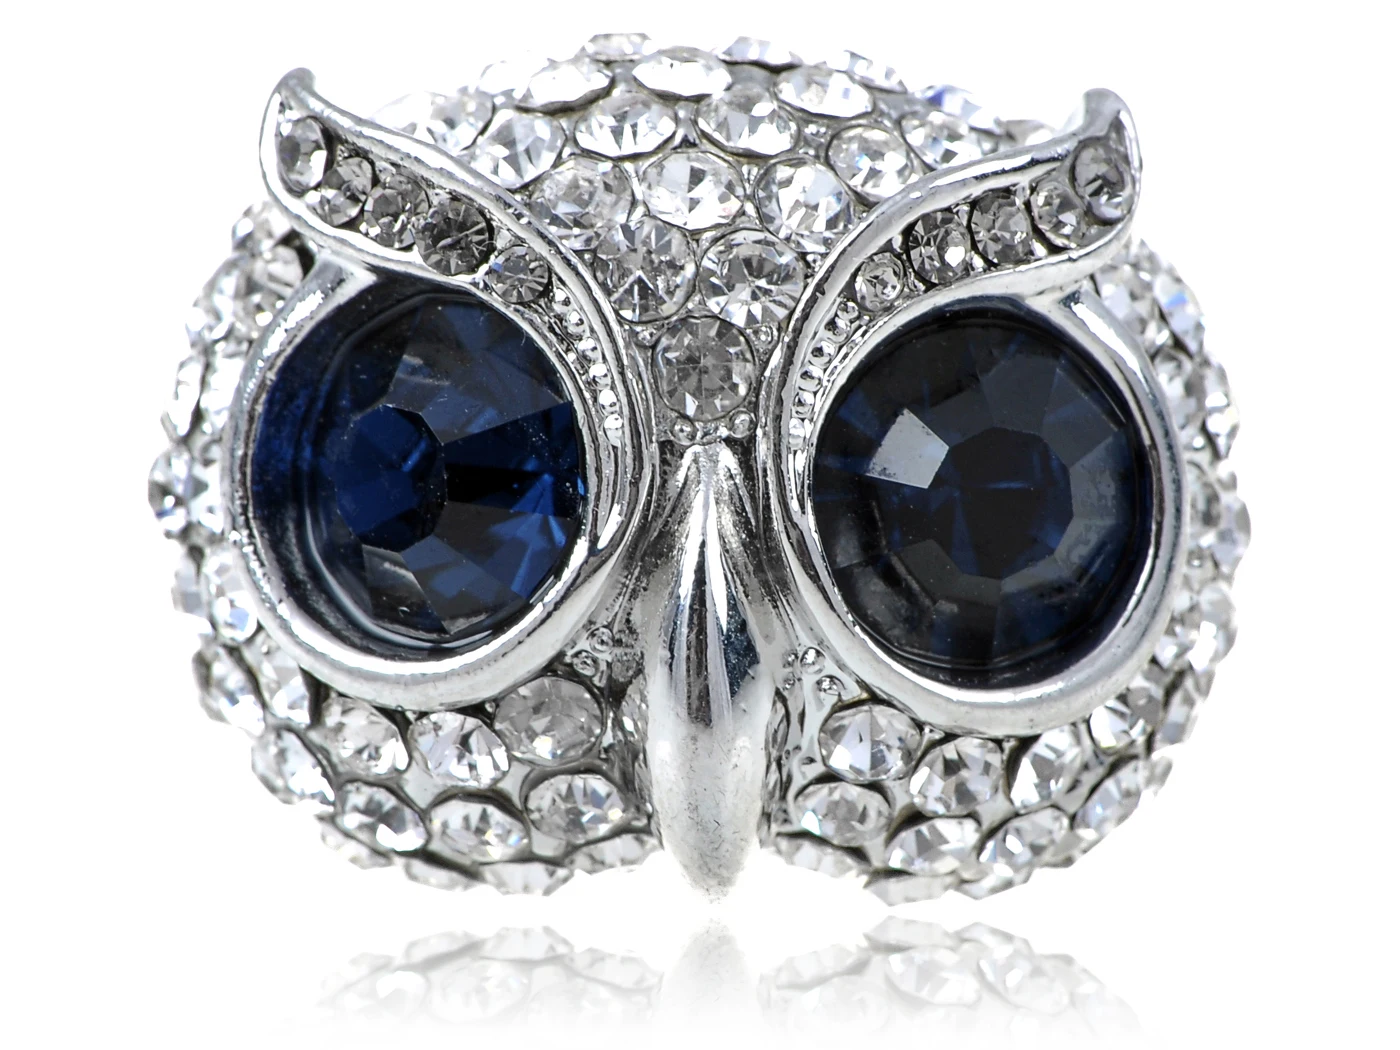 

Womens Adjustable Silvery Tone Dark Blue Gemstone Big Eyed Wise Owl Head Ring